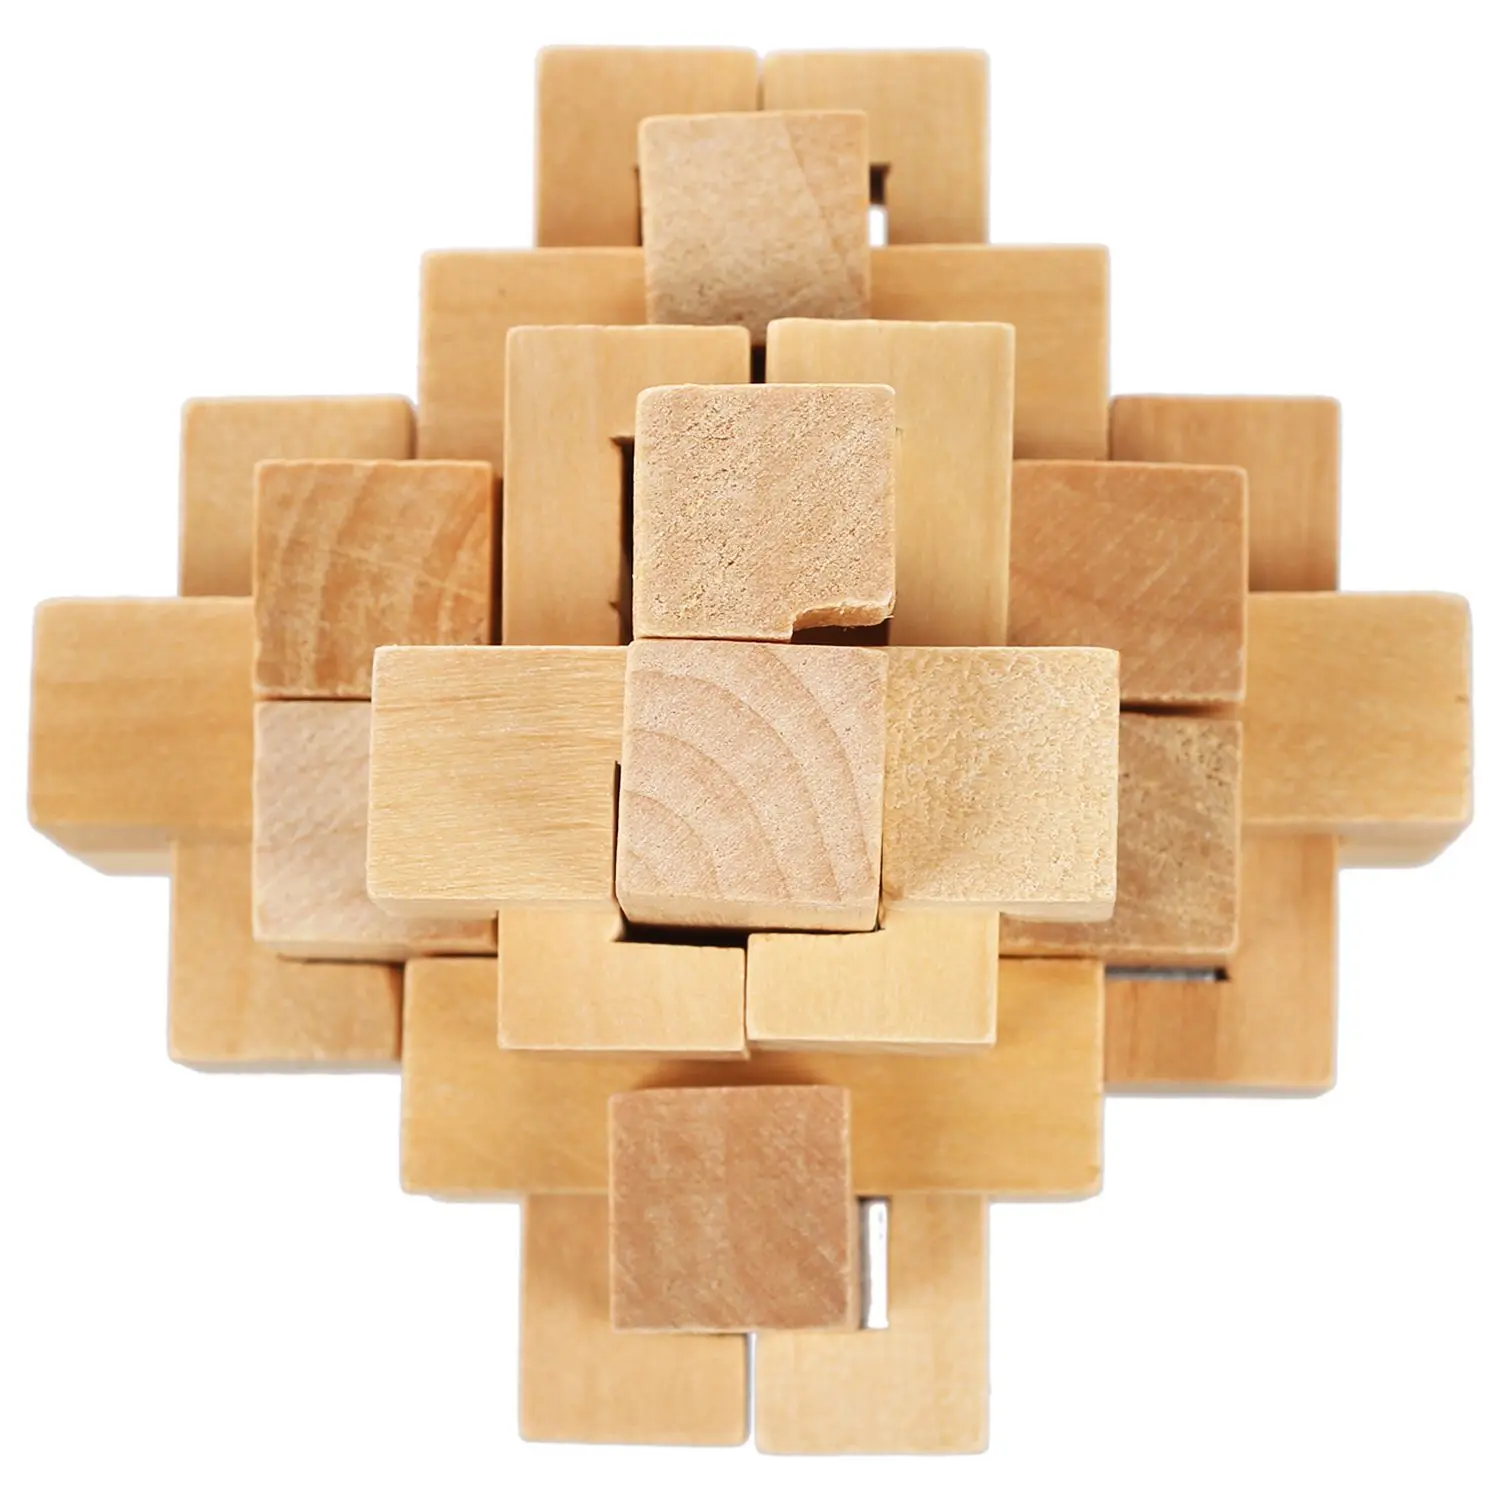 Набор из 6 3D Деревянный Классический Кубик Genius паззлы и головоломки Старый Китай Любань головоломки Замок развивающие игрушки подарок f